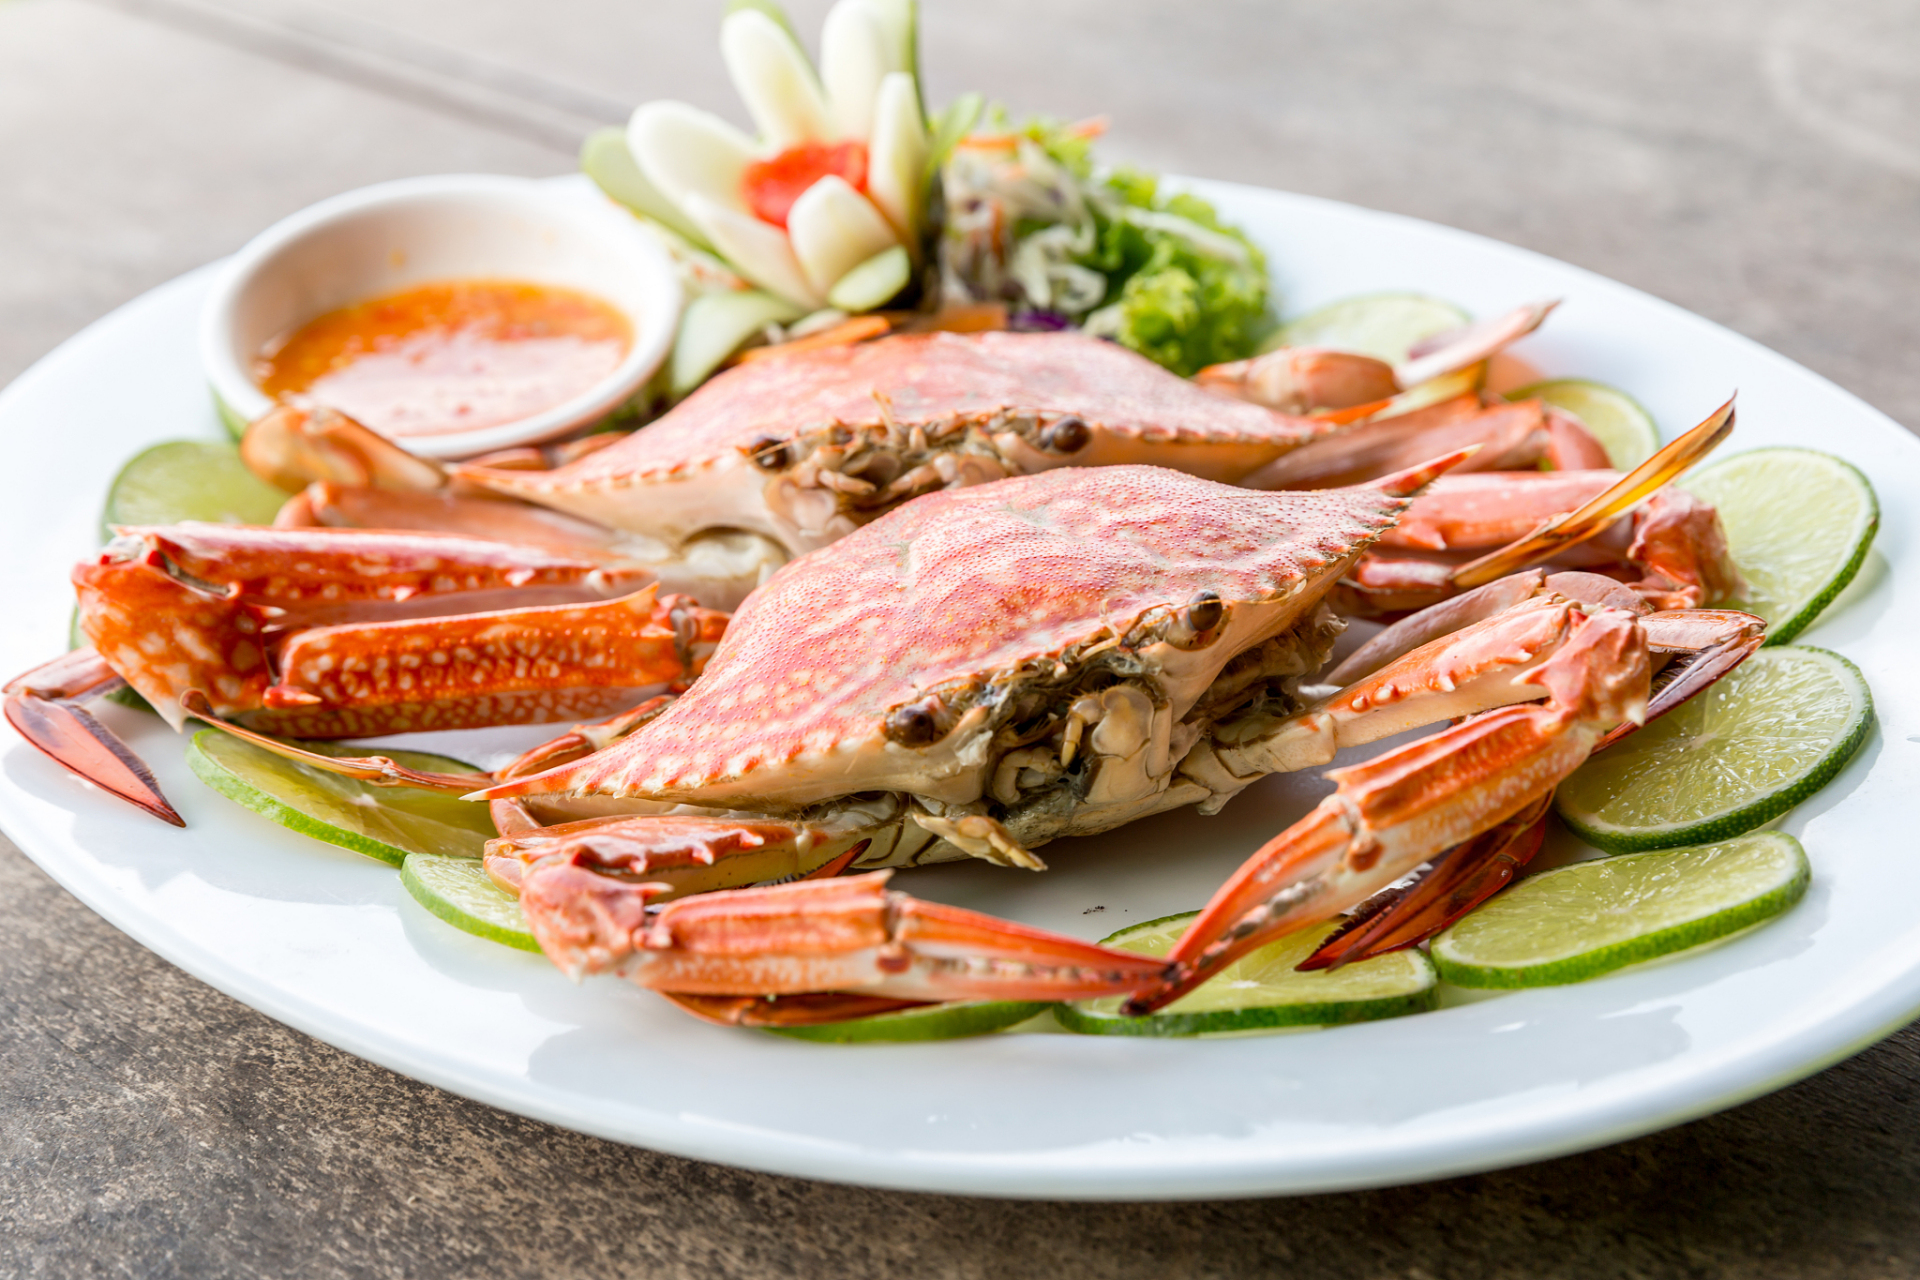 鲜甜入味,清蒸梭子蟹让你品尝最纯粹的海鲜美味 品味鲜美的海鲜美食